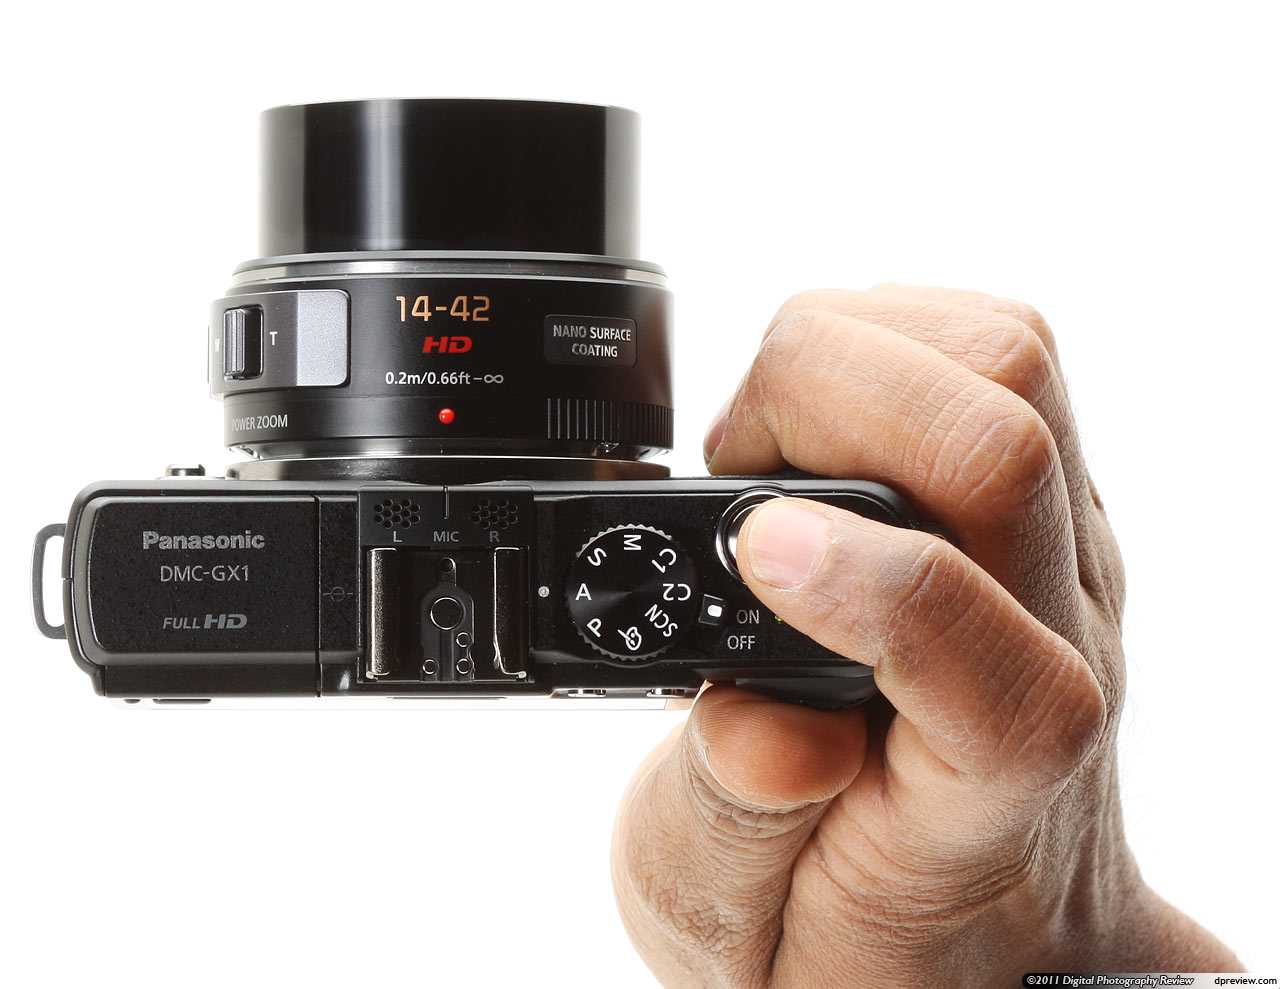 Цифровой фотоаппарат Panasonic Lumix DMC-GX1 14-42 Kit - подробные характеристики обзоры видео фото Цены в интернет-магазинах где можно купить цифровую фотоаппарат Panasonic Lumix DMC-GX1 14-42 Kit